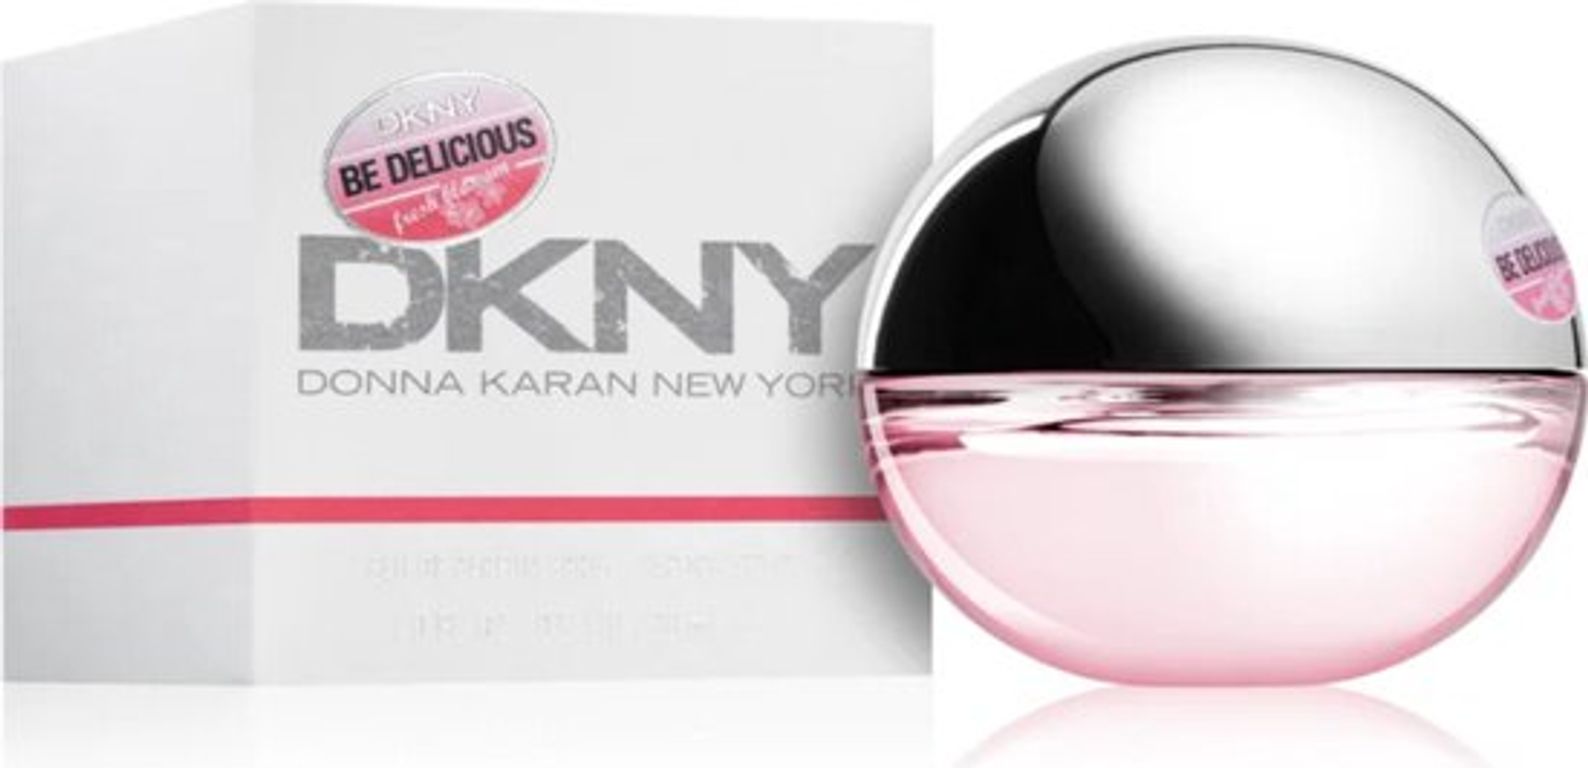 DKNY Be Delicious Fresh Blossom Eau de parfum box